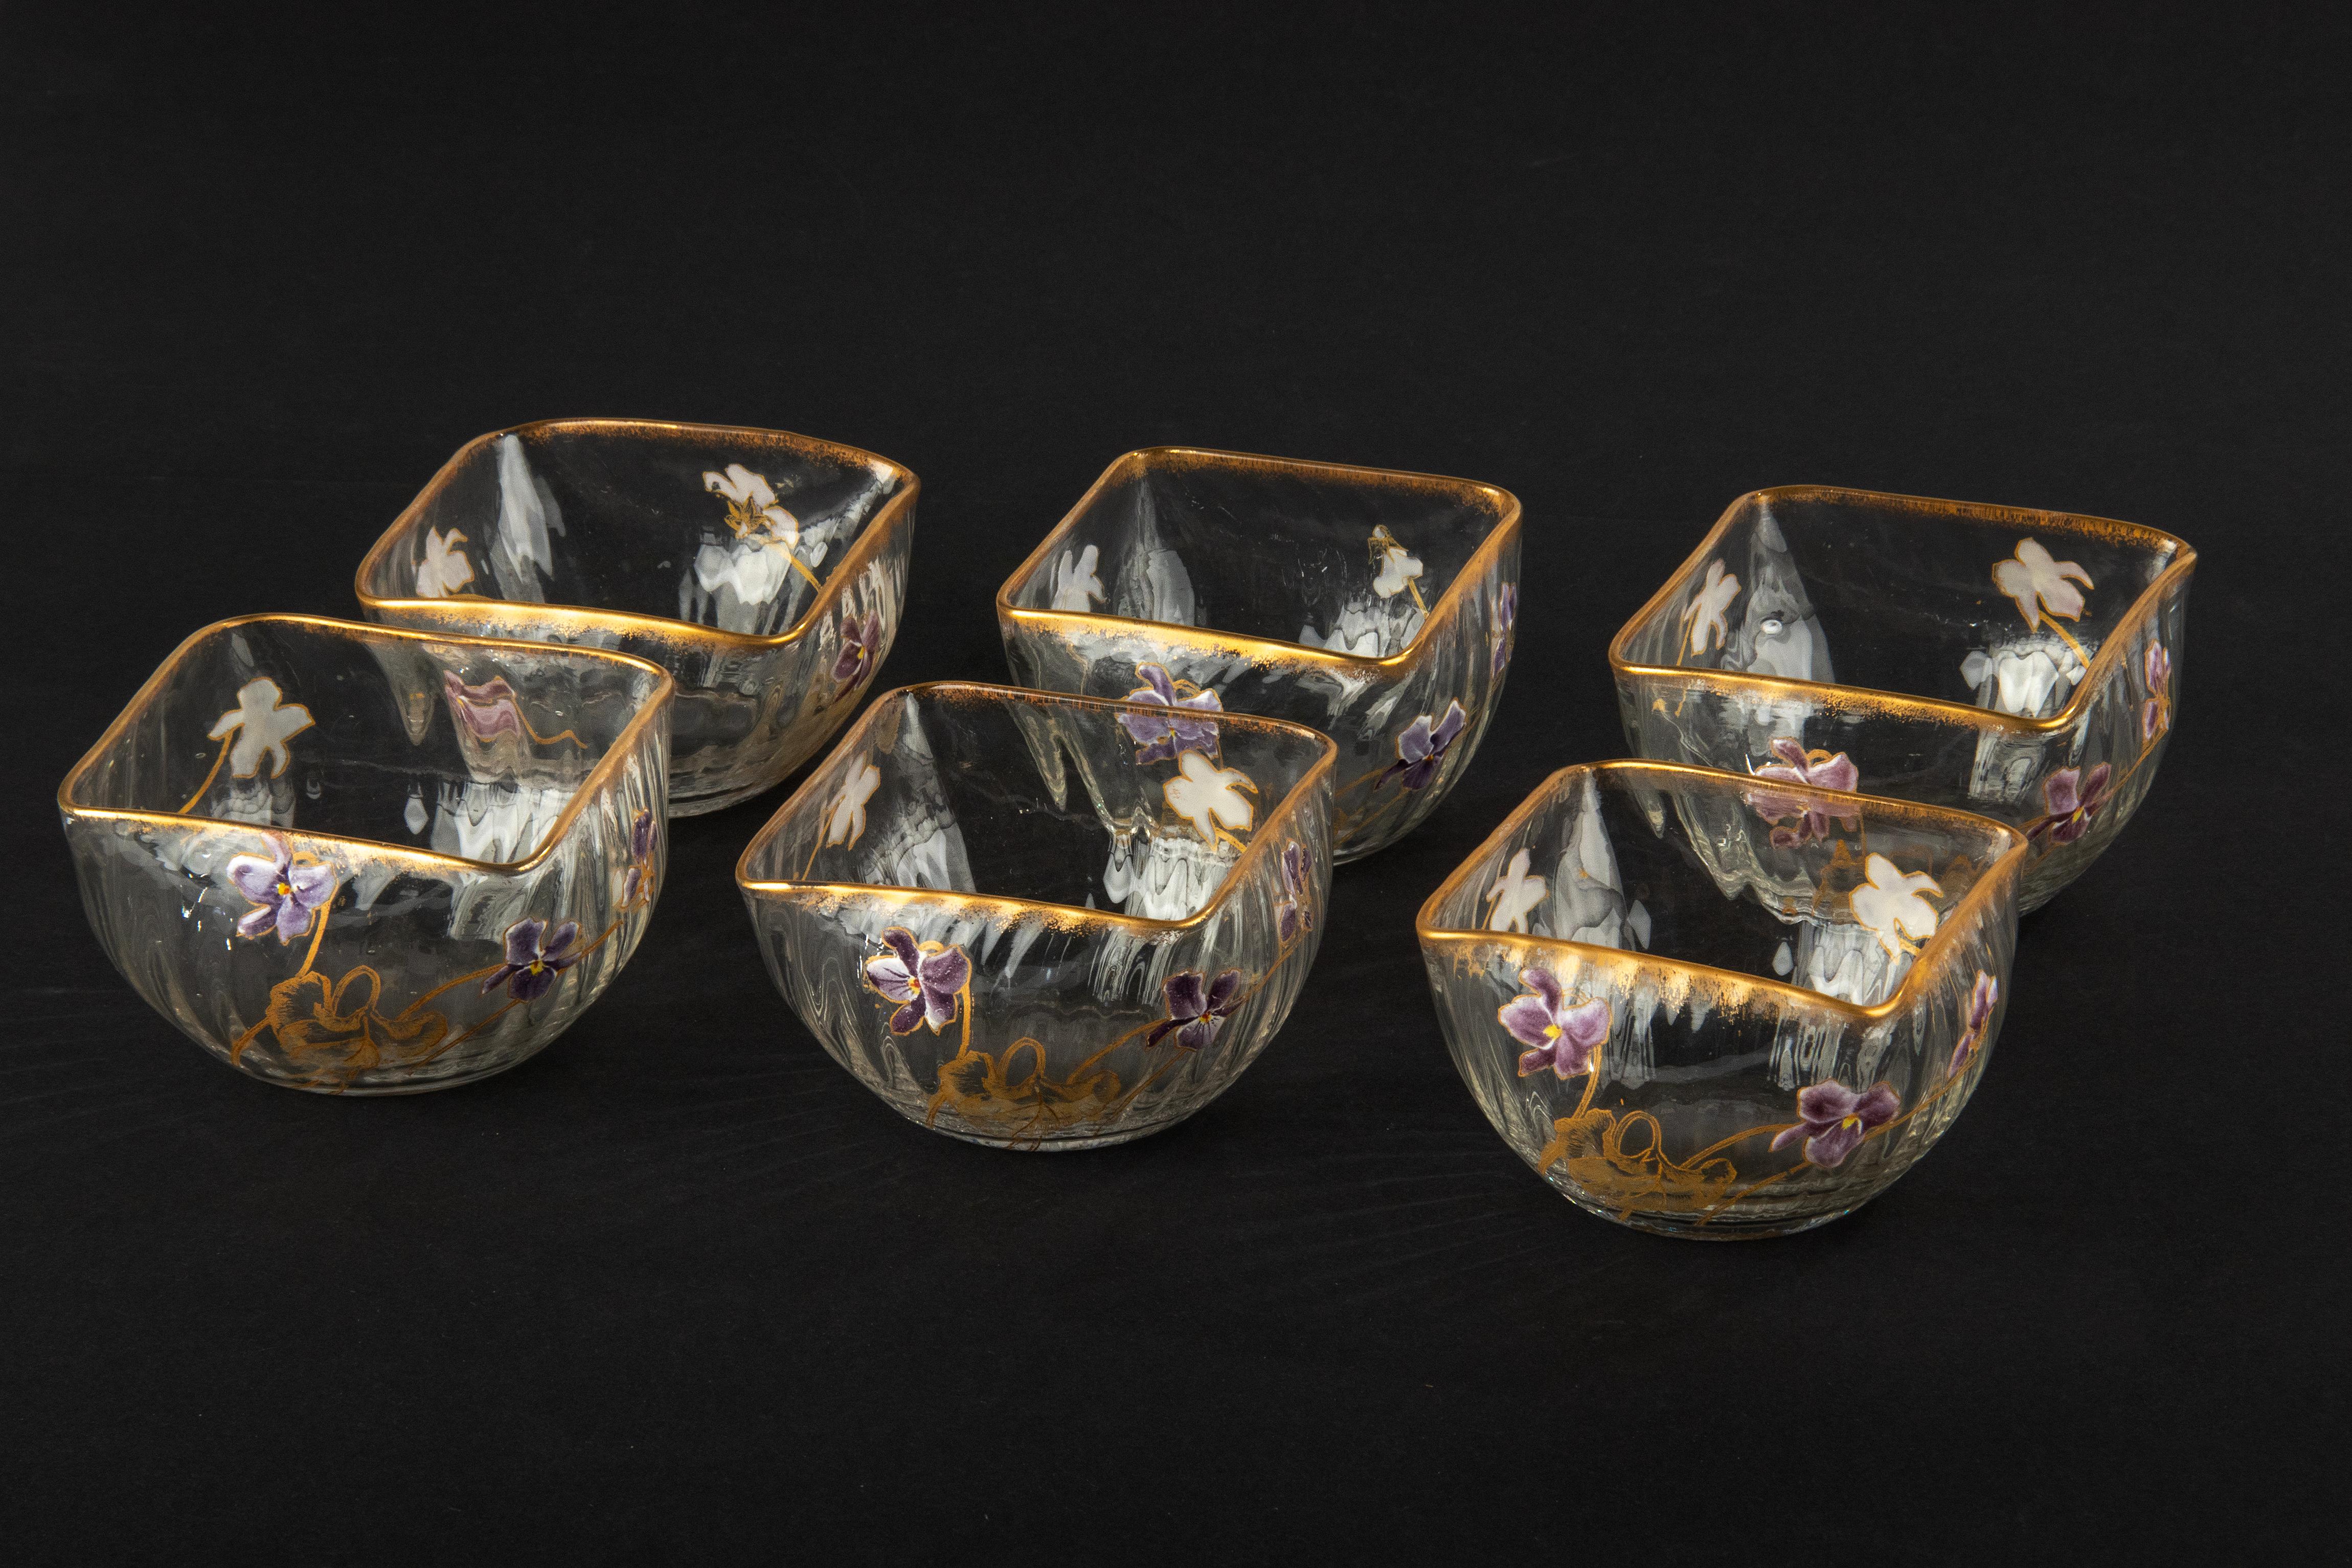 Un bel ensemble de 6 bols en cristal, attribué à la manufacture française Daum Nancy. Les bols sont magnifiquement peints de fleurs et d'accents dorés, entièrement dans le style Art nouveau. Les bols ne sont pas marqués, mais leur forme, la